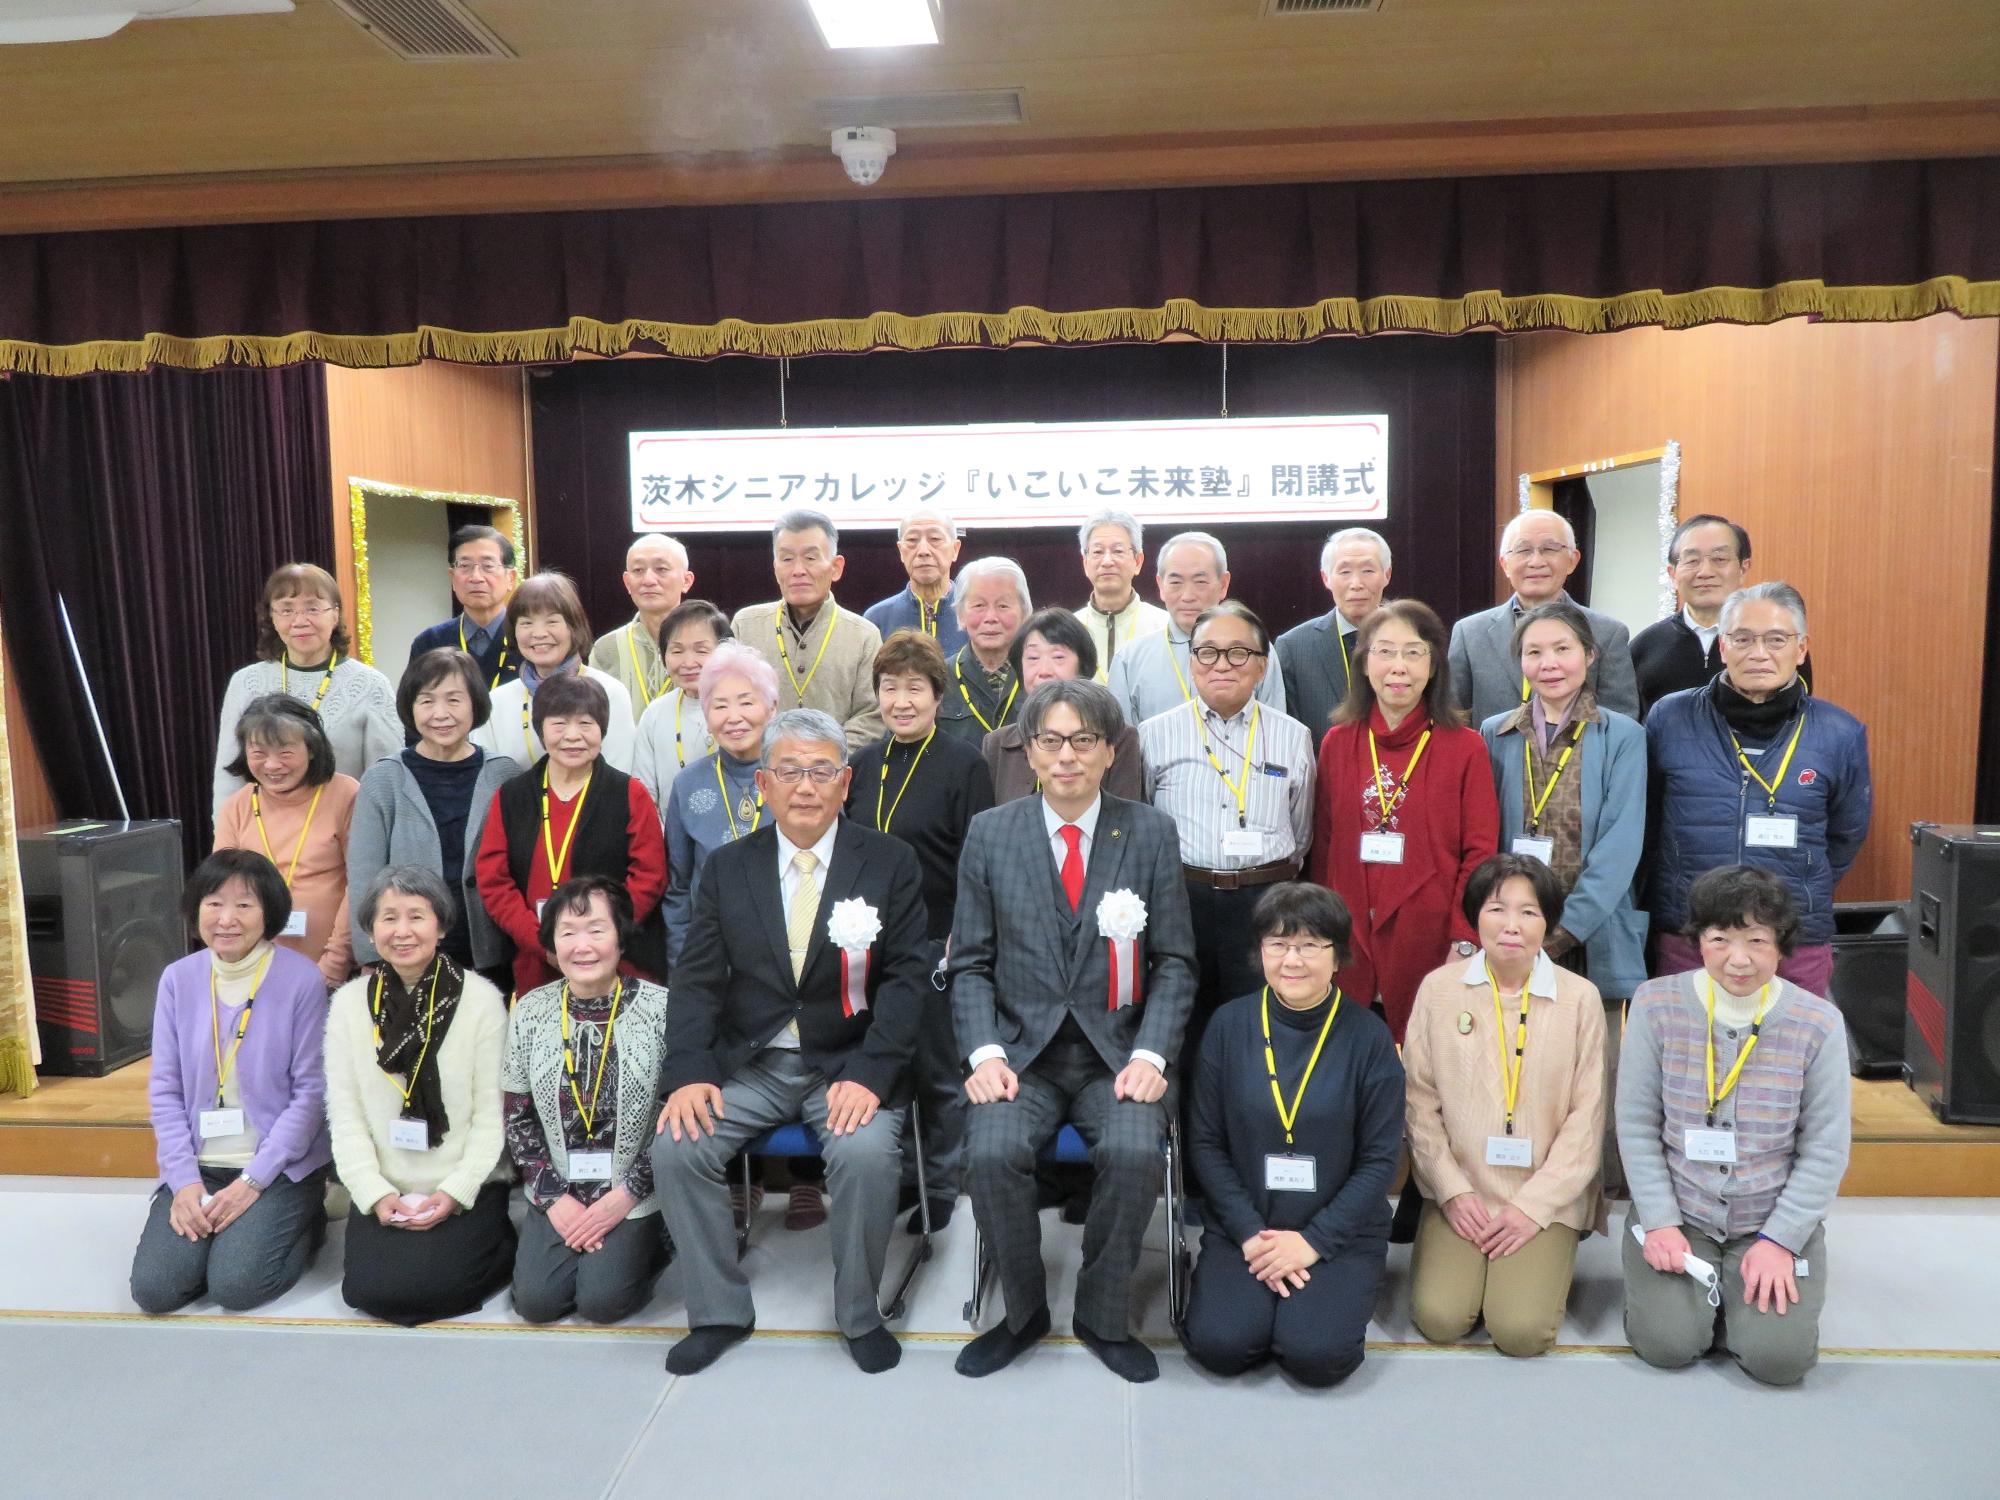 わがまち茨木と北摂の歴史・文化コース卒業生の皆さんと市長の集合写真